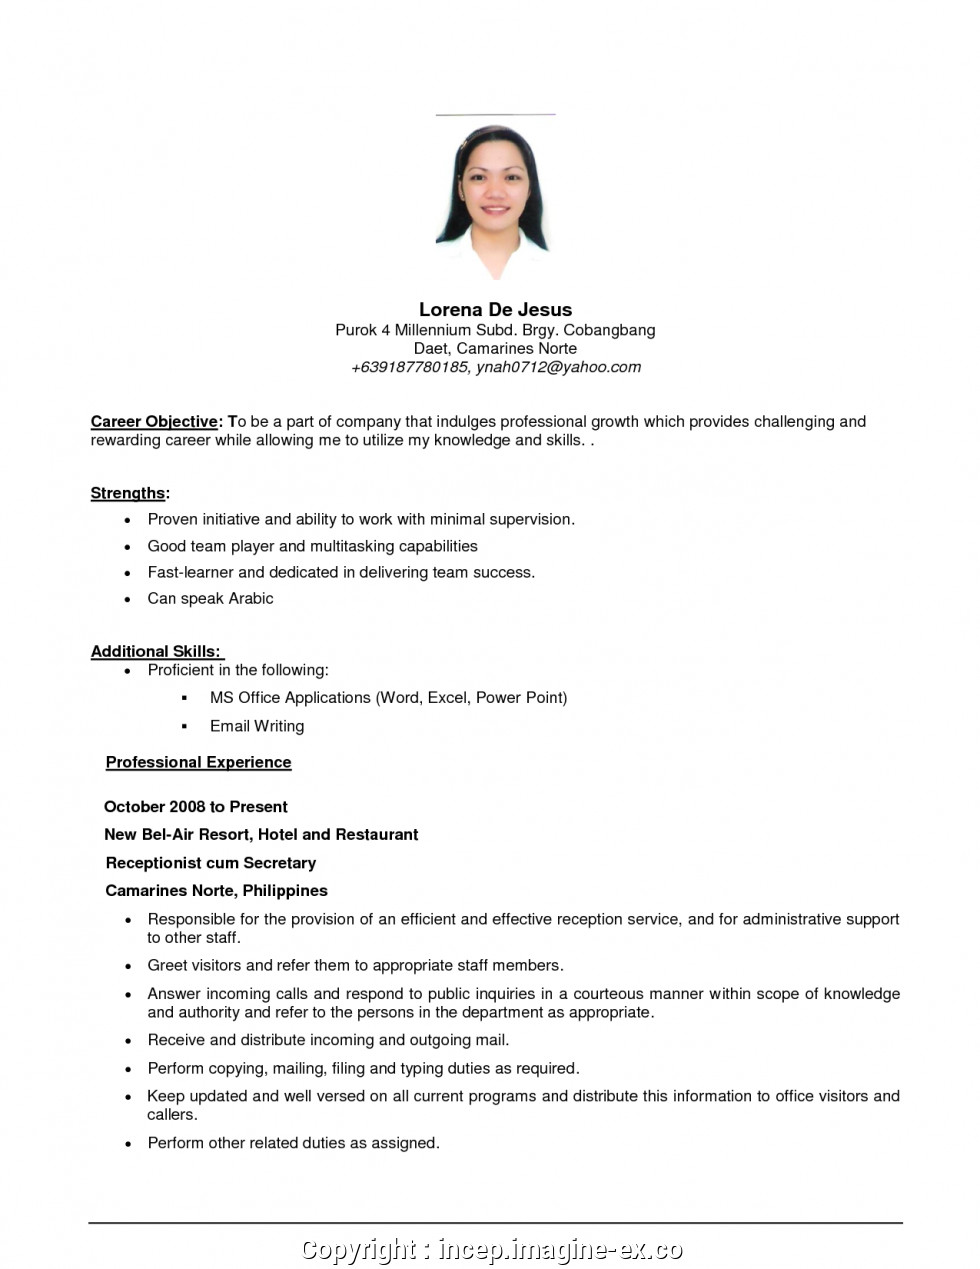 Sample Resume Applying for Any Position Best Sample Objective In Resume for Any Position Objective